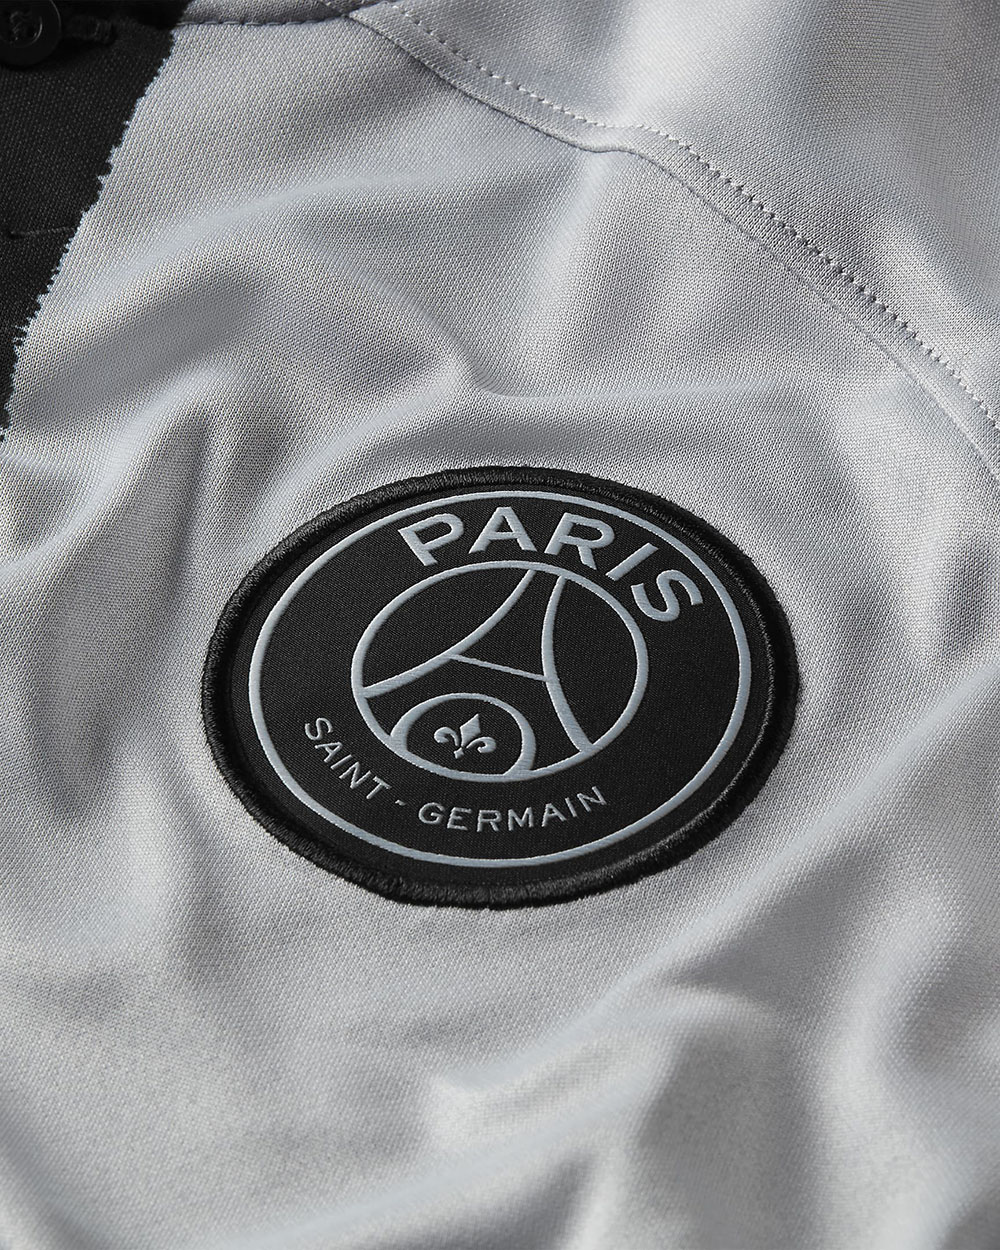 Le maillot du PSG version Vuitton, Chanel, Hermès - KULTT